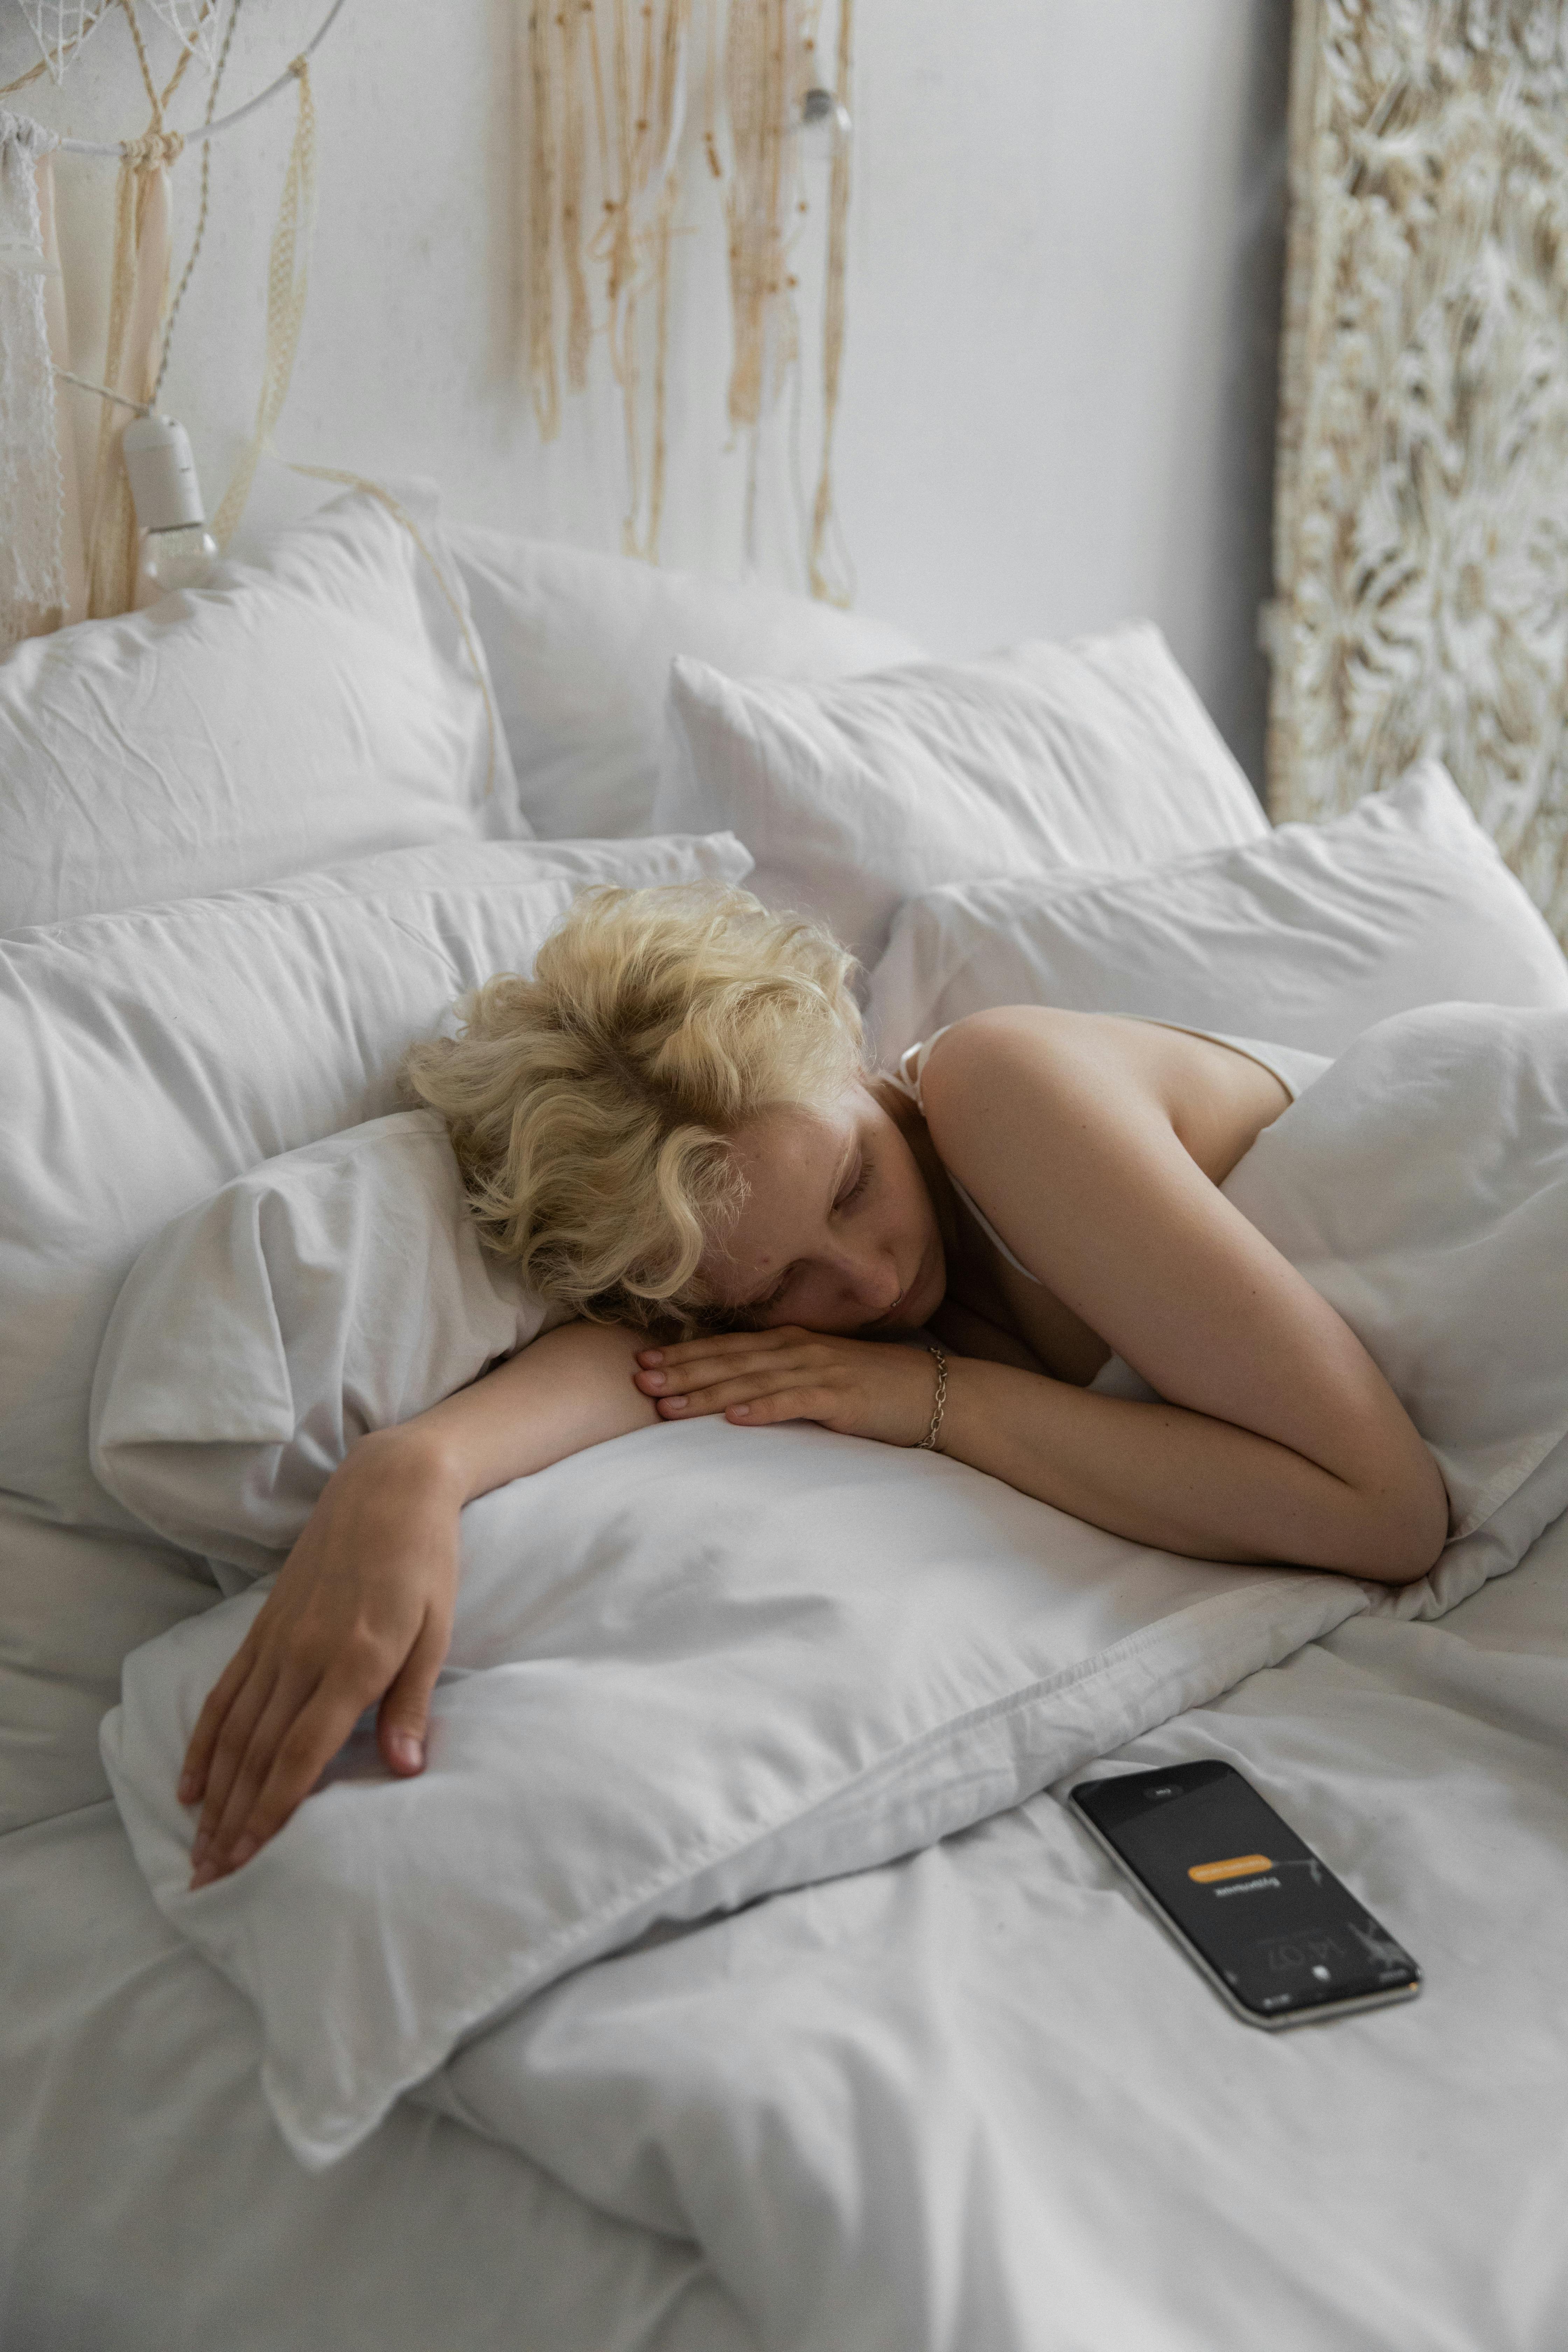 sleepy woman lying on bed with alarm on smartphone